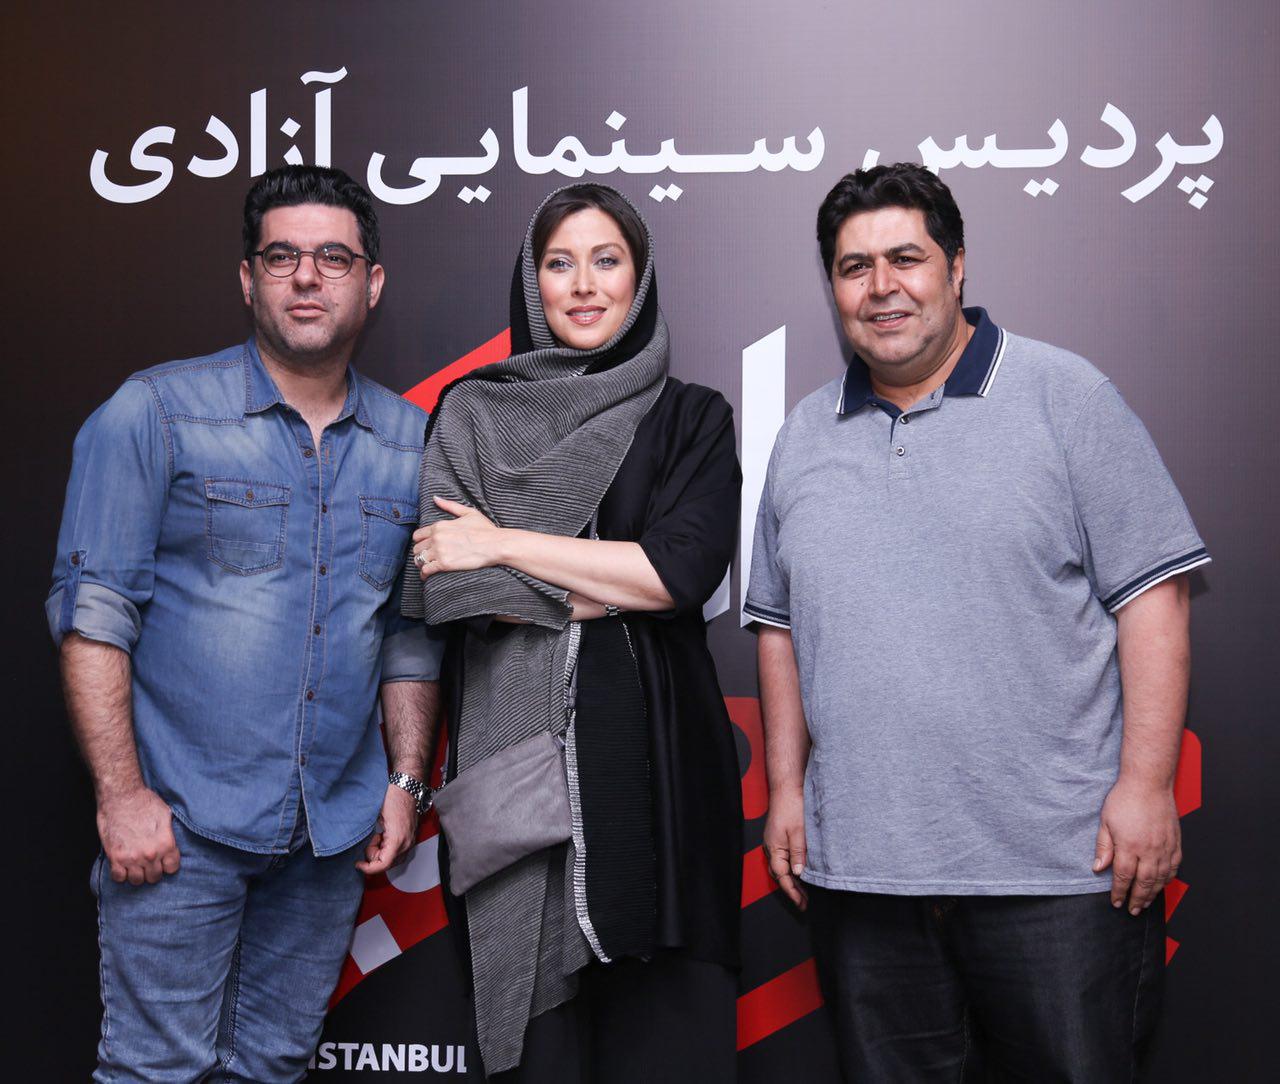 مصطفی کیایی در جشنواره فیلم سینمایی چهارراه استانبول به همراه فرهاد اصلانی و مهتاب کرامتی